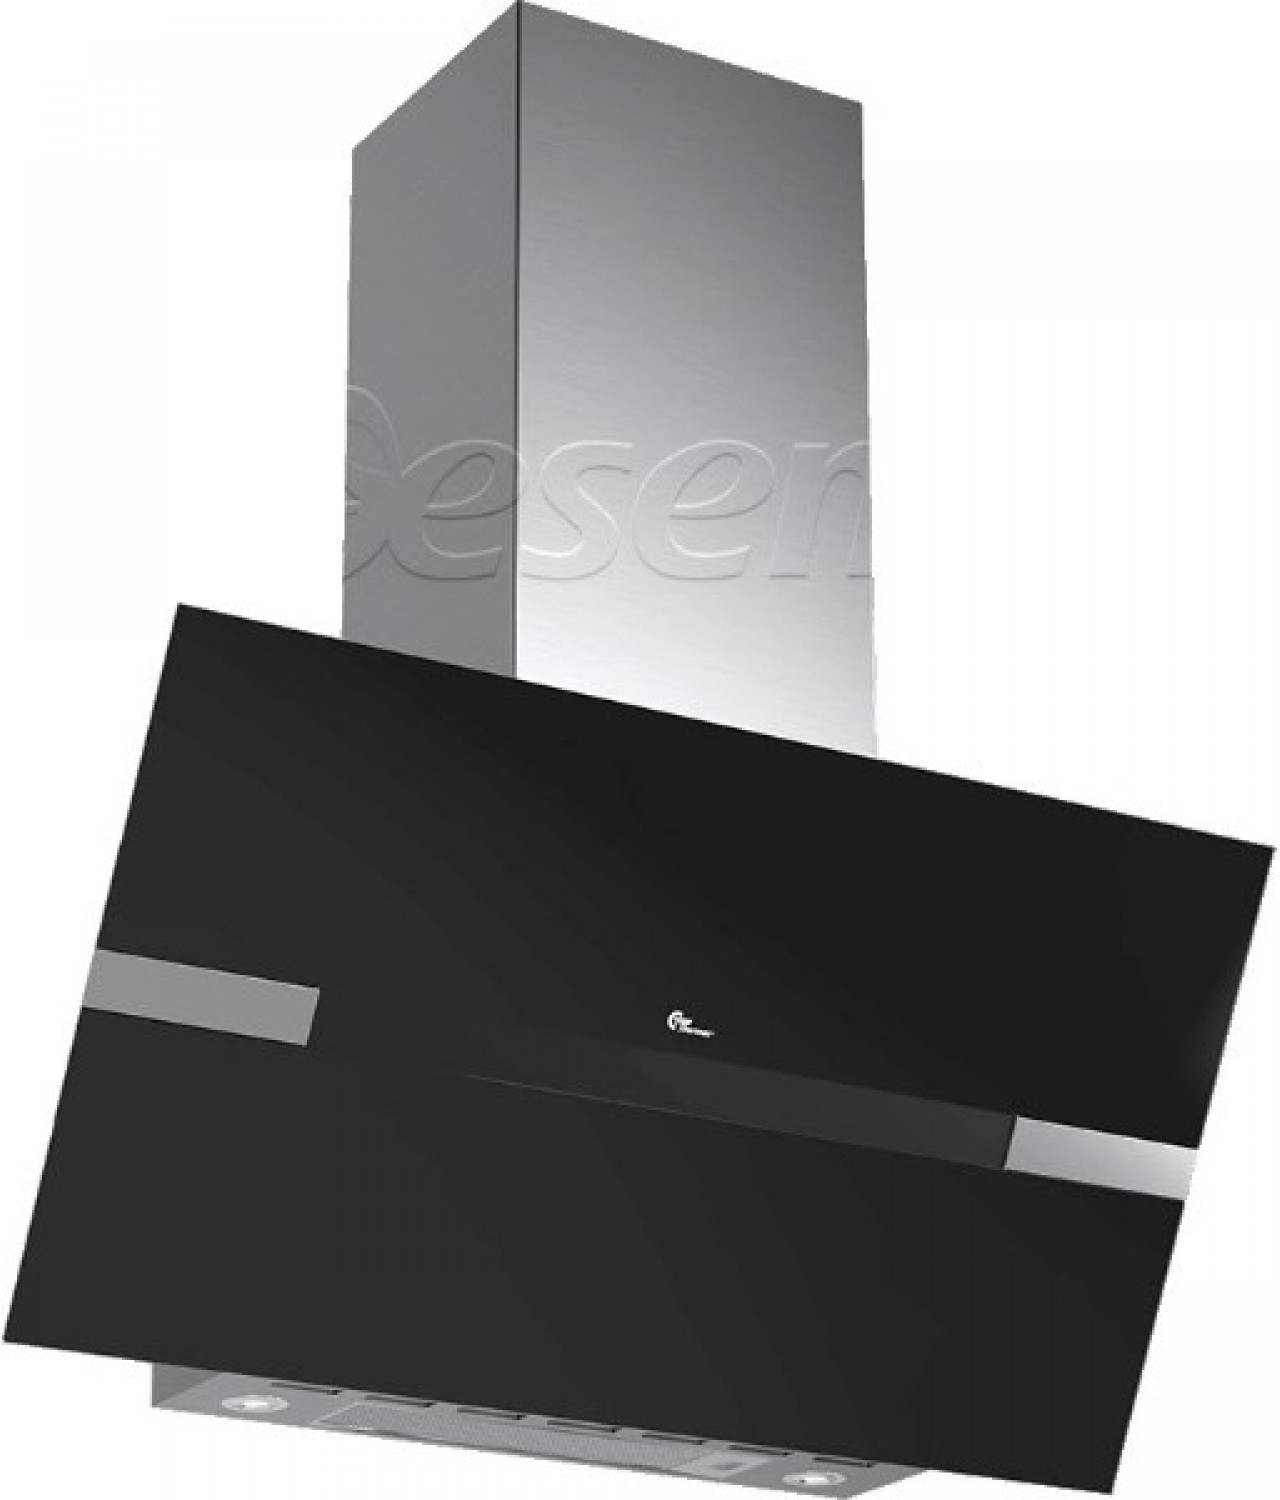 Подвесные настенные вытяжки Mini Preston 800 II black glass-stainless steel